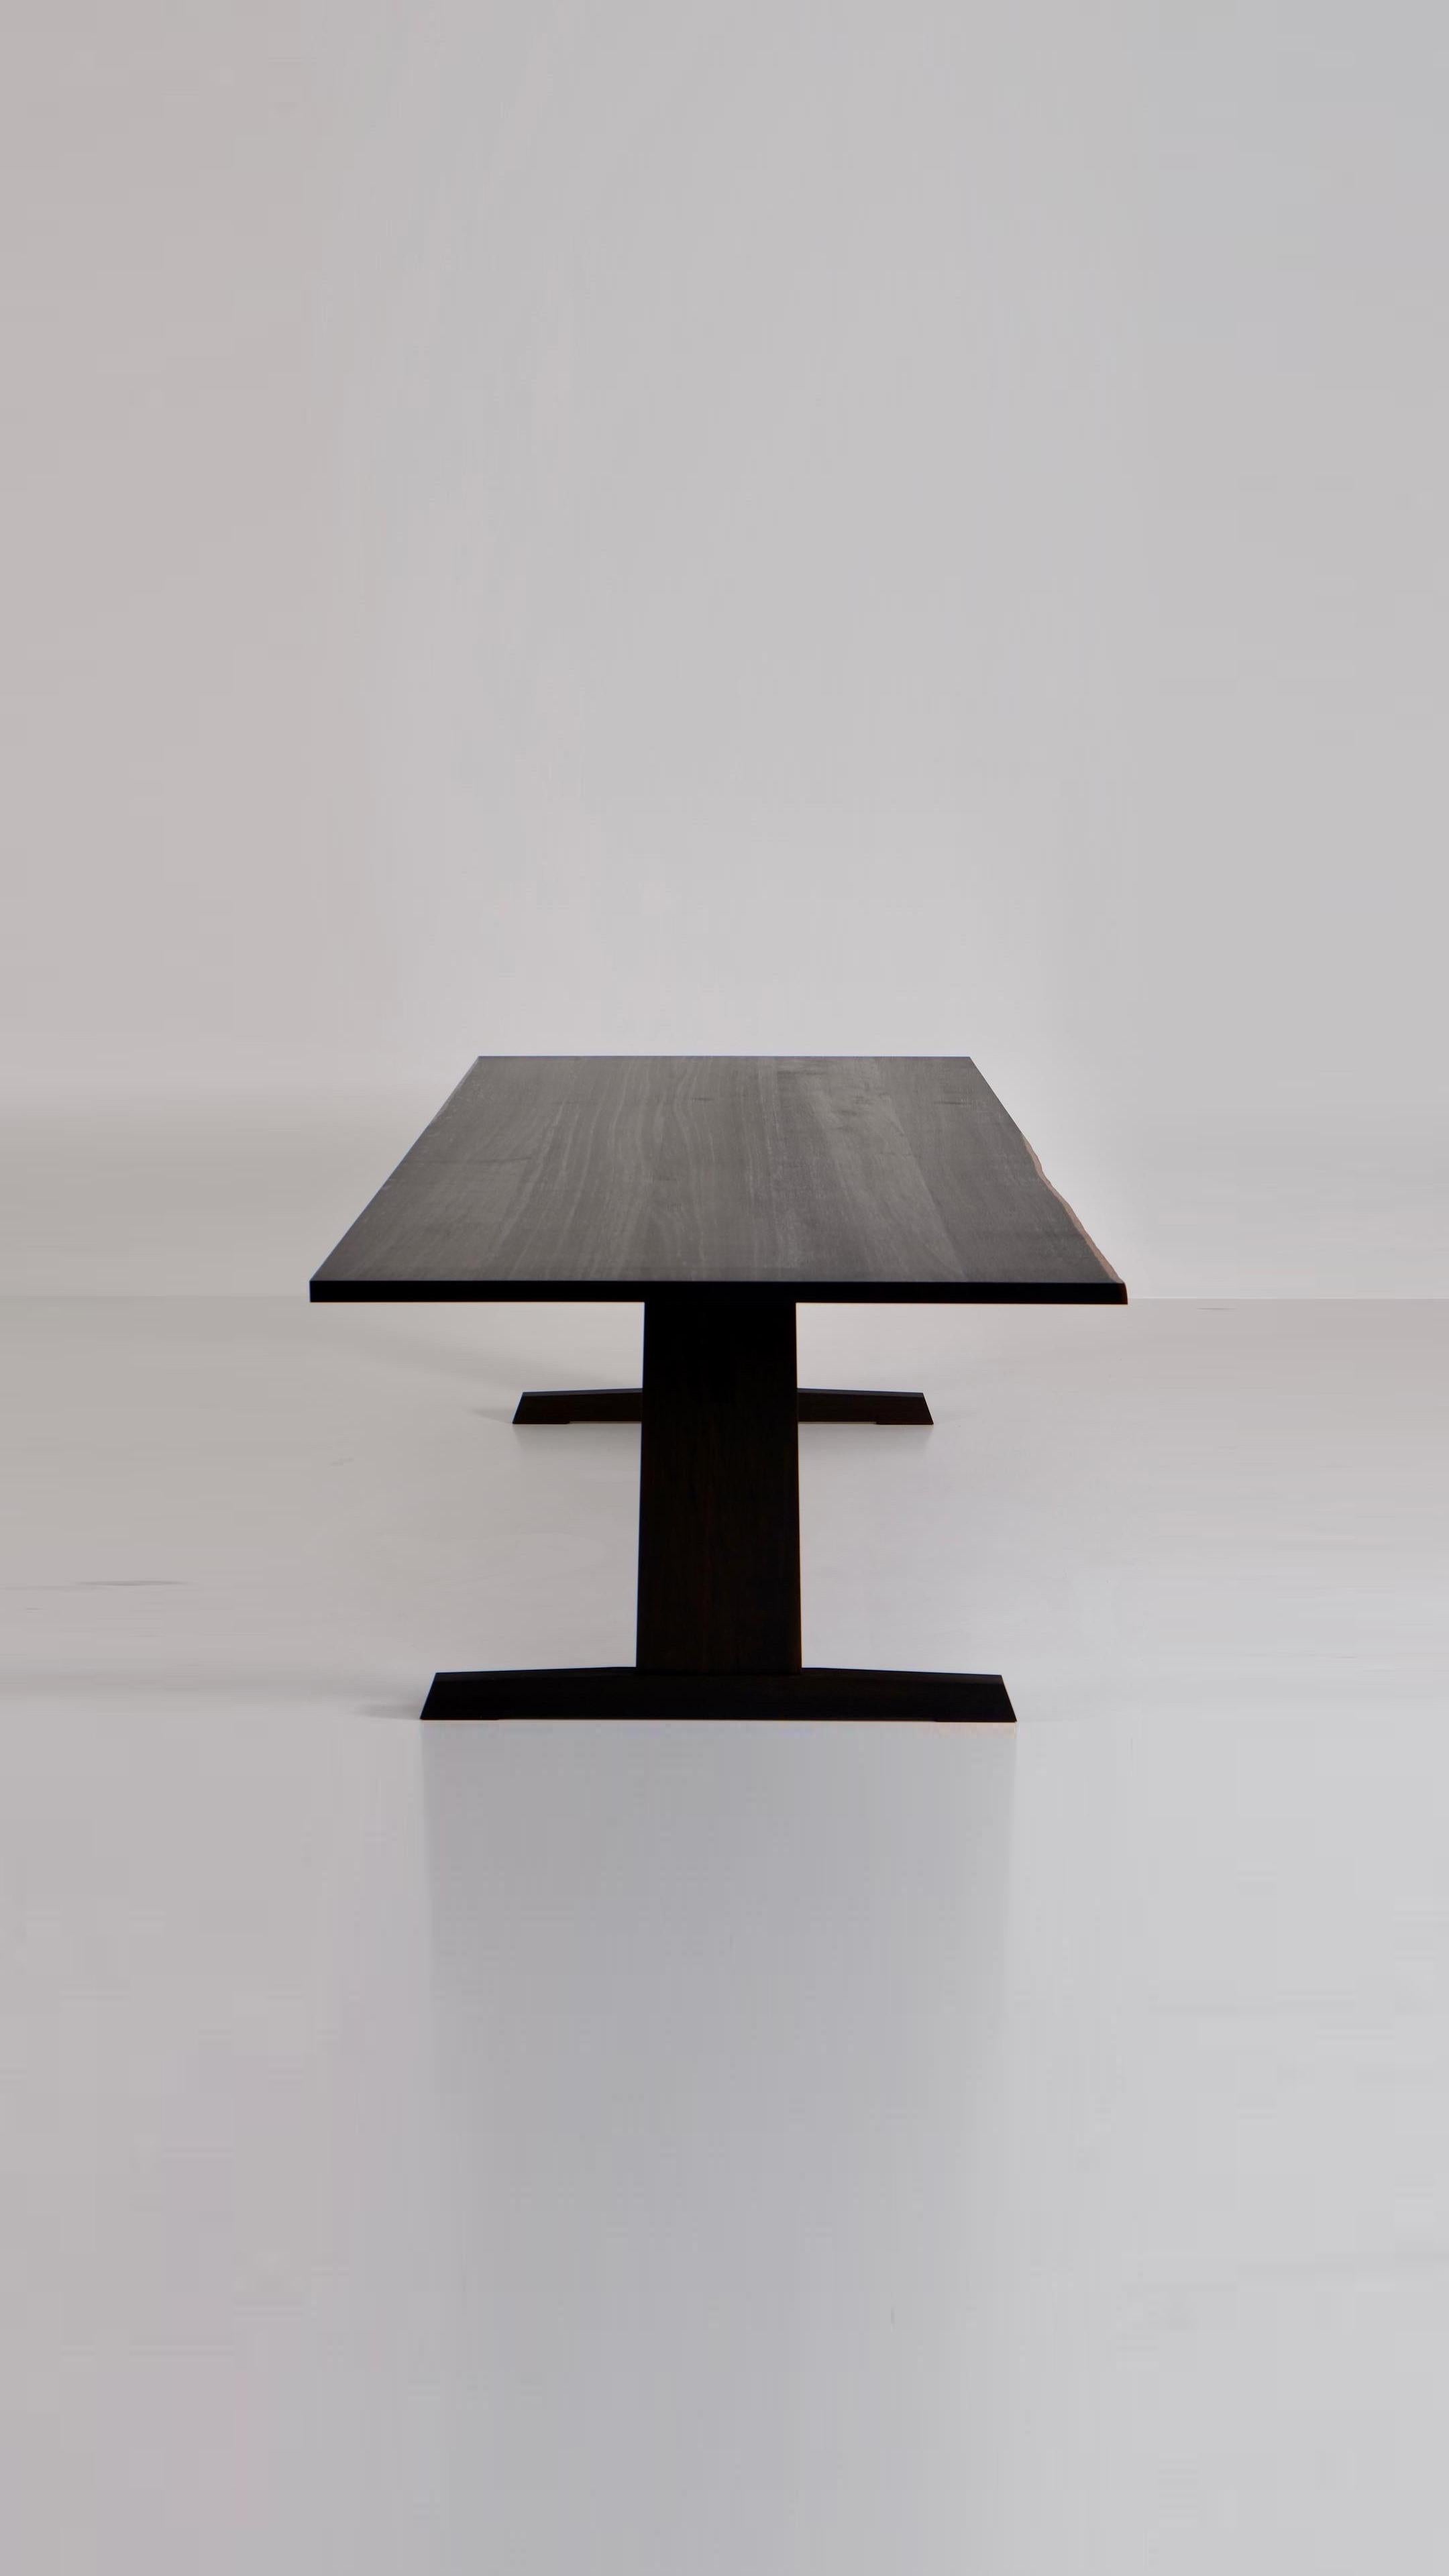 
ChatGPT
ChatGPT
La table de salle à manger en chêne fumé présente une interprétation moderne de la table de salle à manger classique fabriquée en bois massif. Construit entièrement sans boulons, son design célèbre la beauté inhérente du matériau -